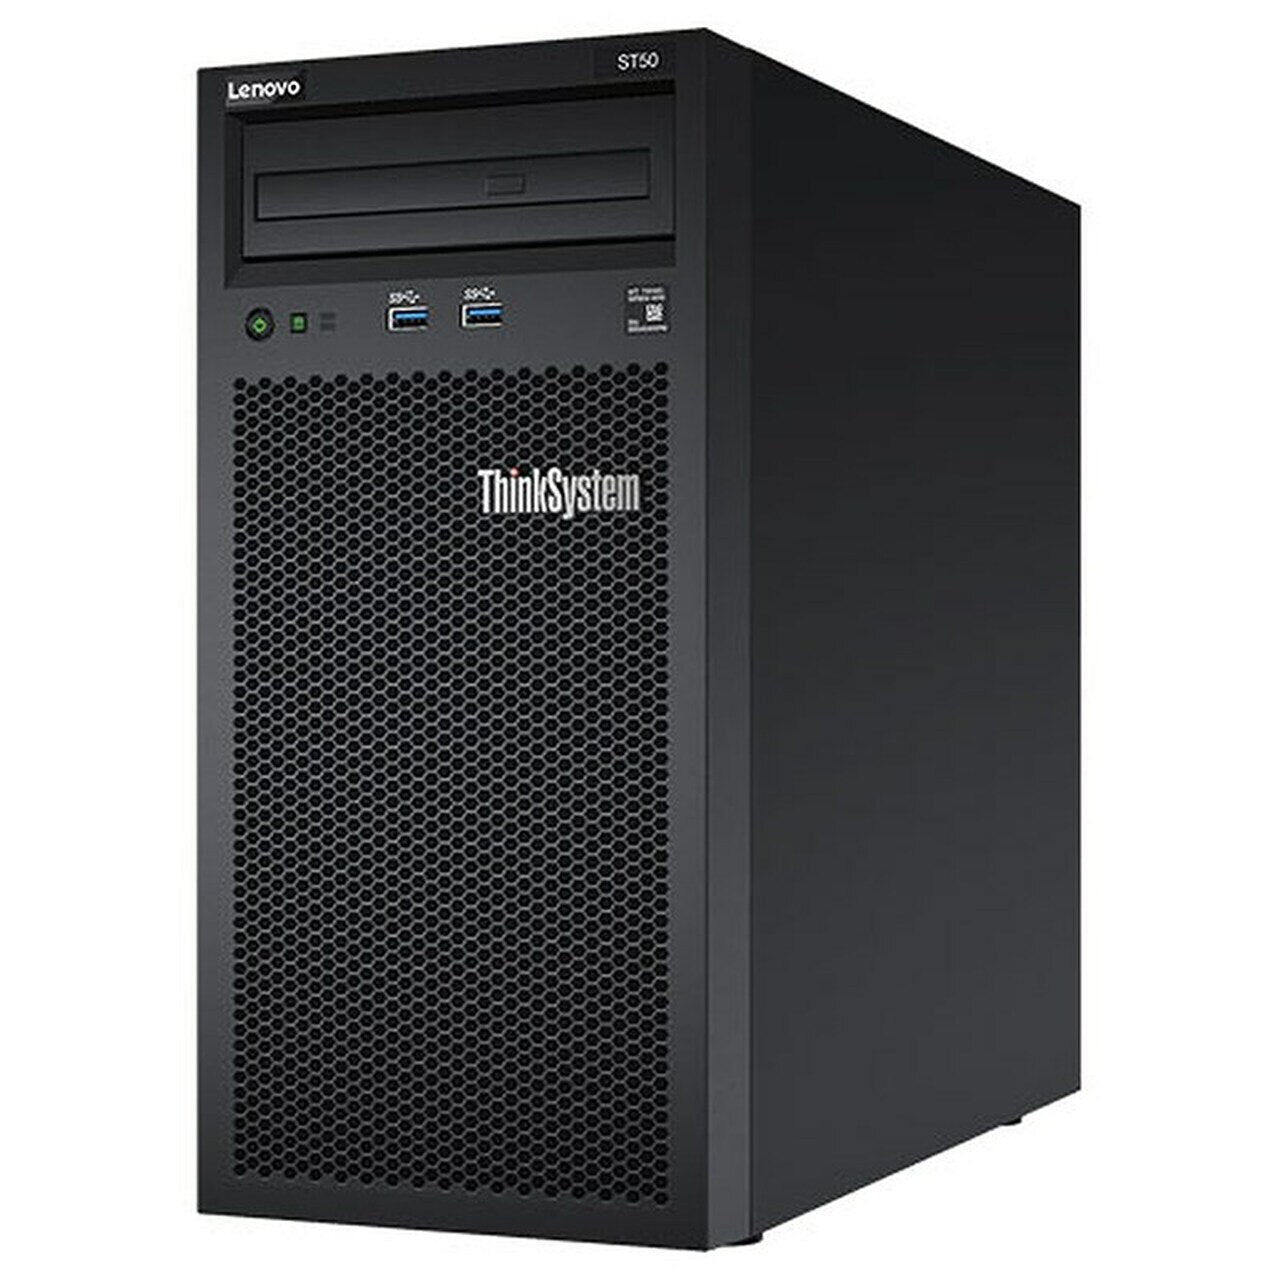 LENOVO ThinkSystem ST50 4U Tower Server, 1 x Intel Xeon E-2104G 3.6GHz, 1x8GB 2Rx8, SW RD, 3 x 3.5' Non-HS Bays 1 x Fixed PSU, 3 Year NBD LENOVO